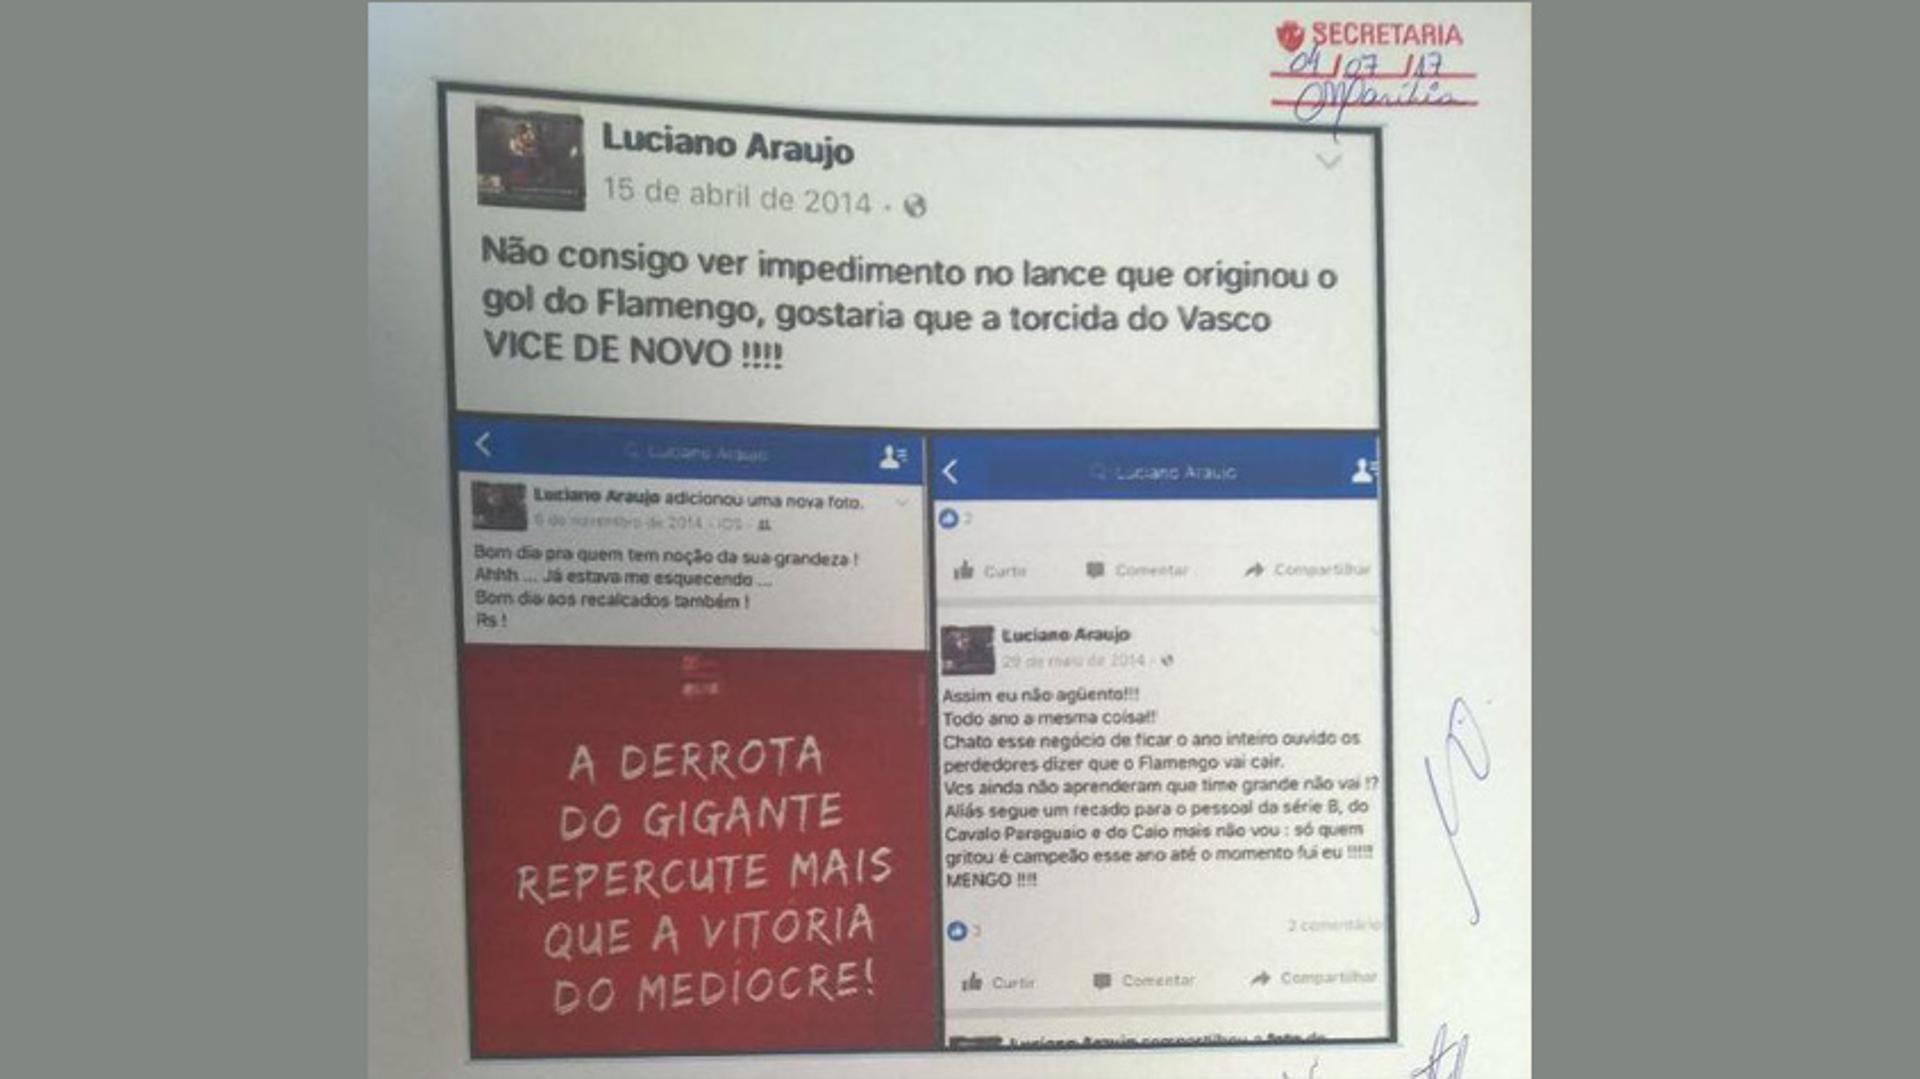 Parte da denúncia da oposição sobre o torcedor do Flamengo que virou sócio do Vasco. Veja a seguir a galeria especial LANCE!